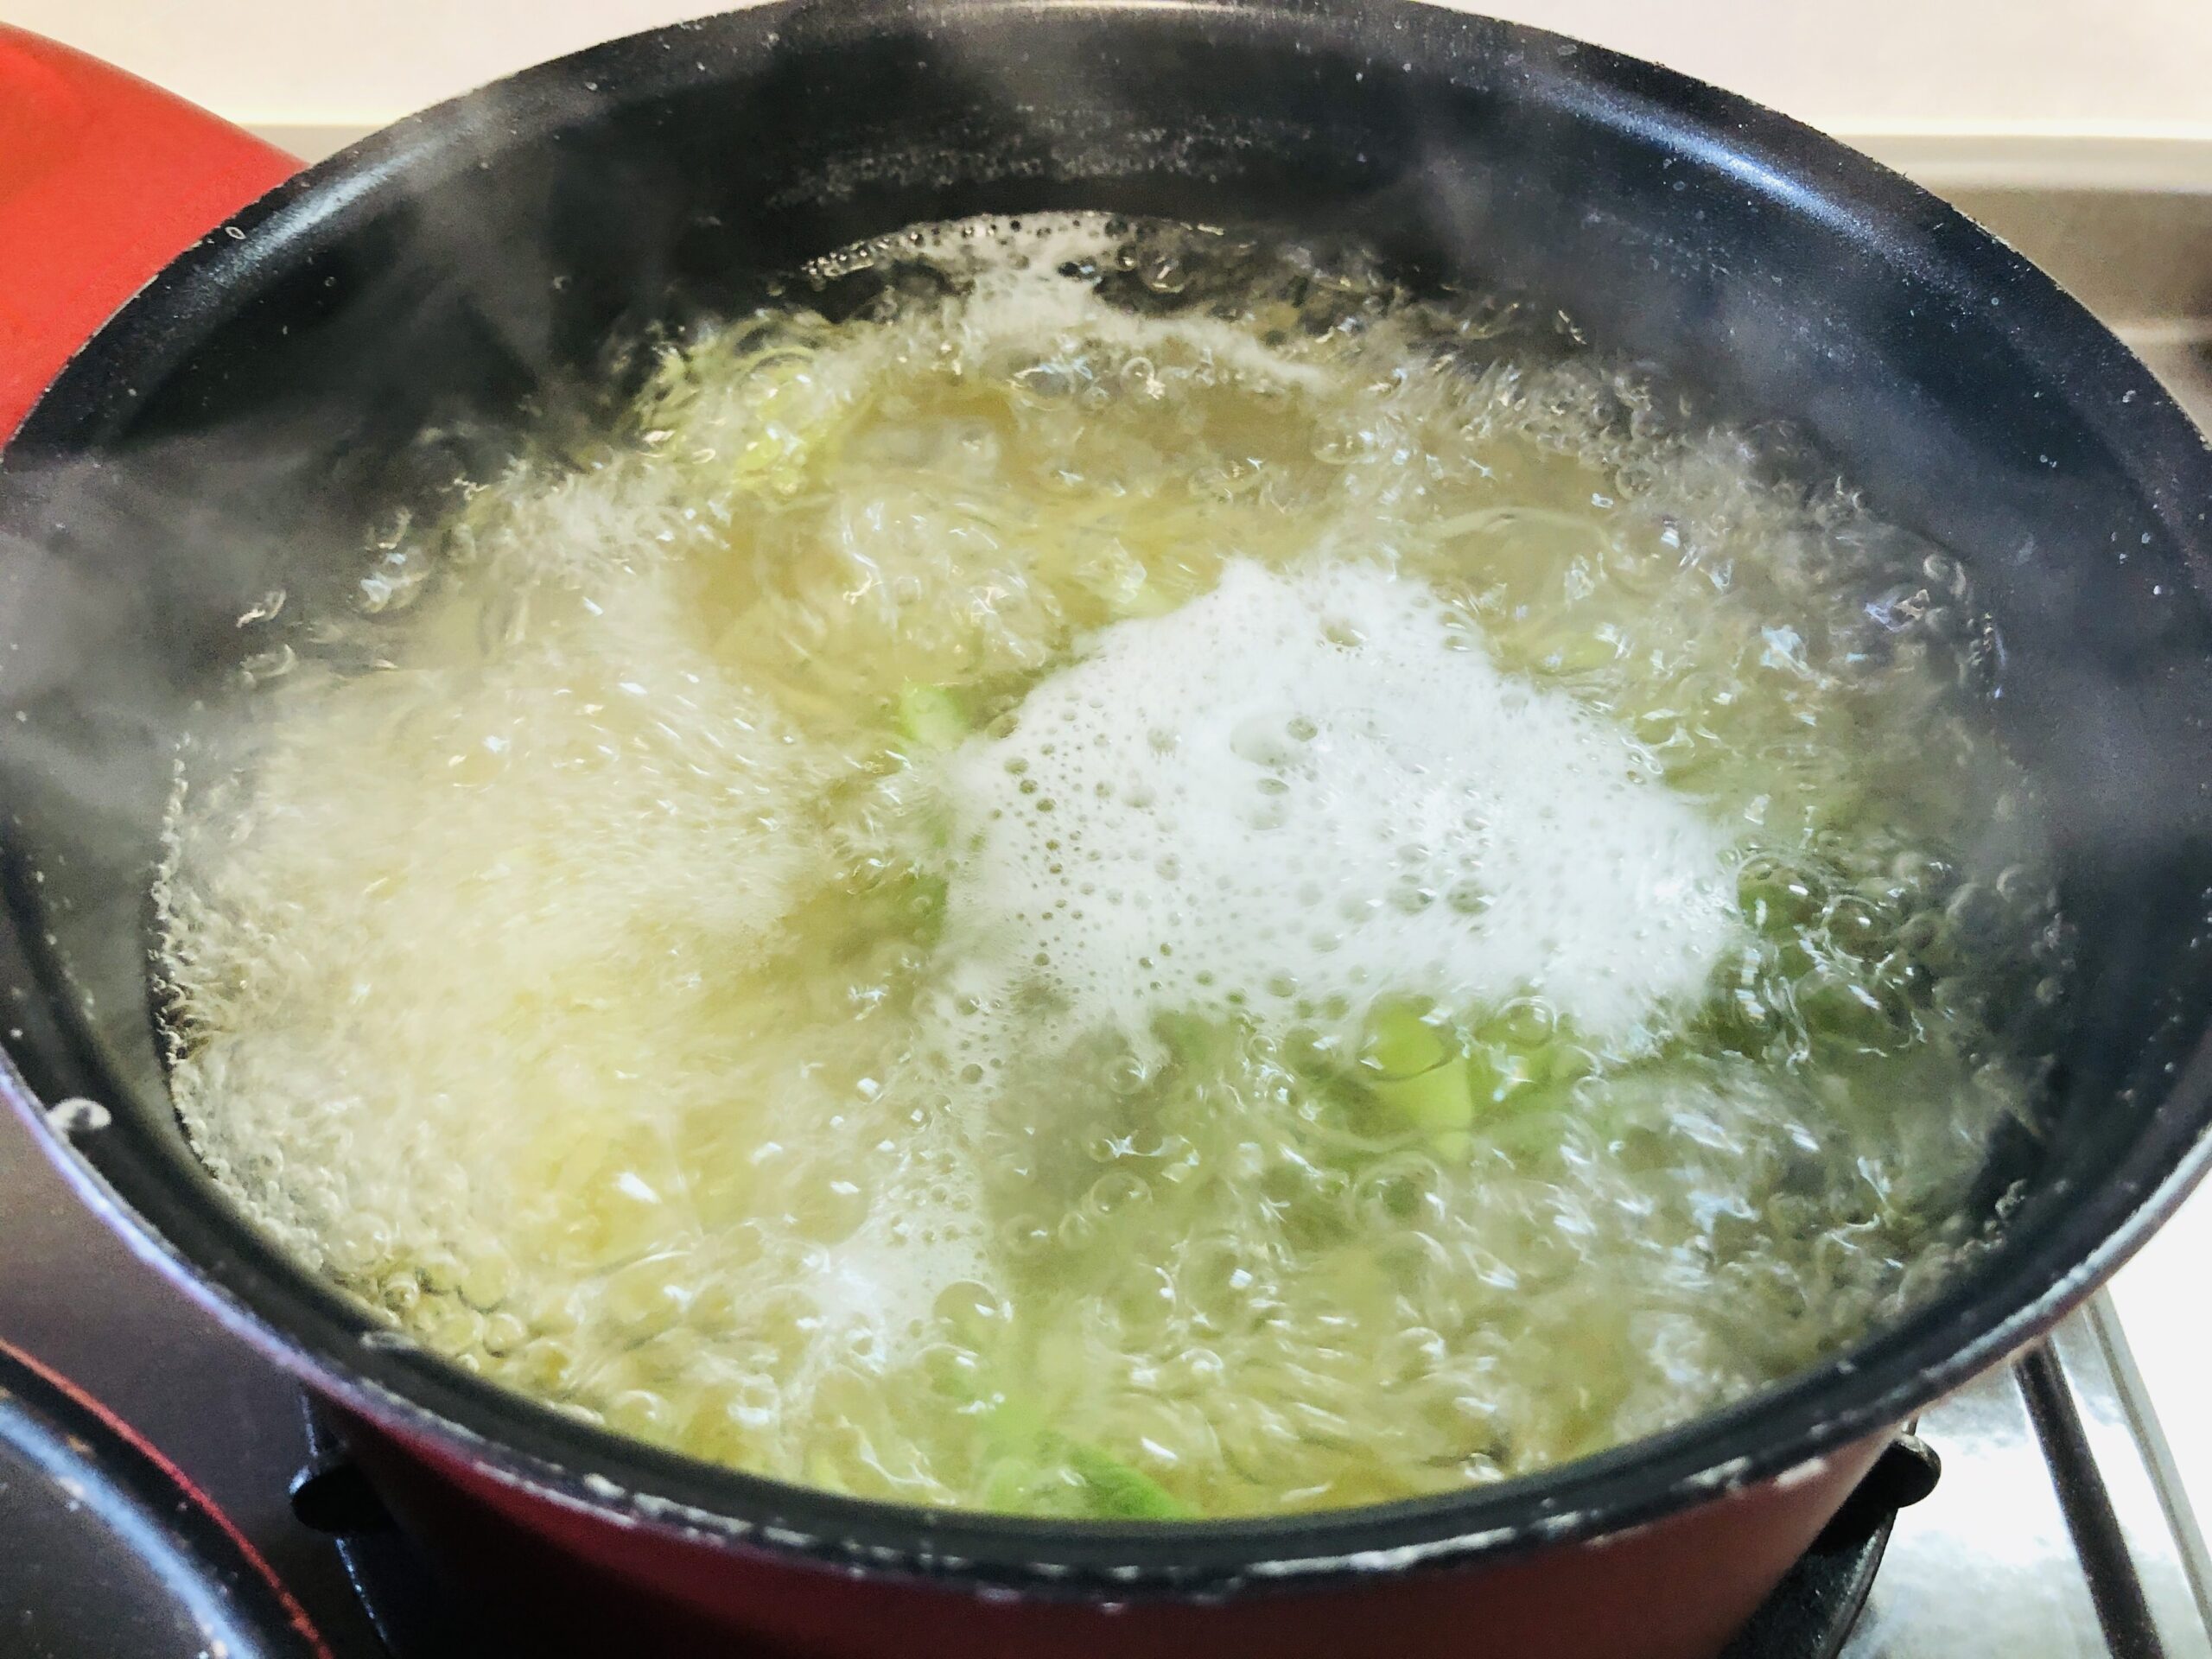 パスタを茹でている鍋にアスパラのスライスを加えた状態の画像です